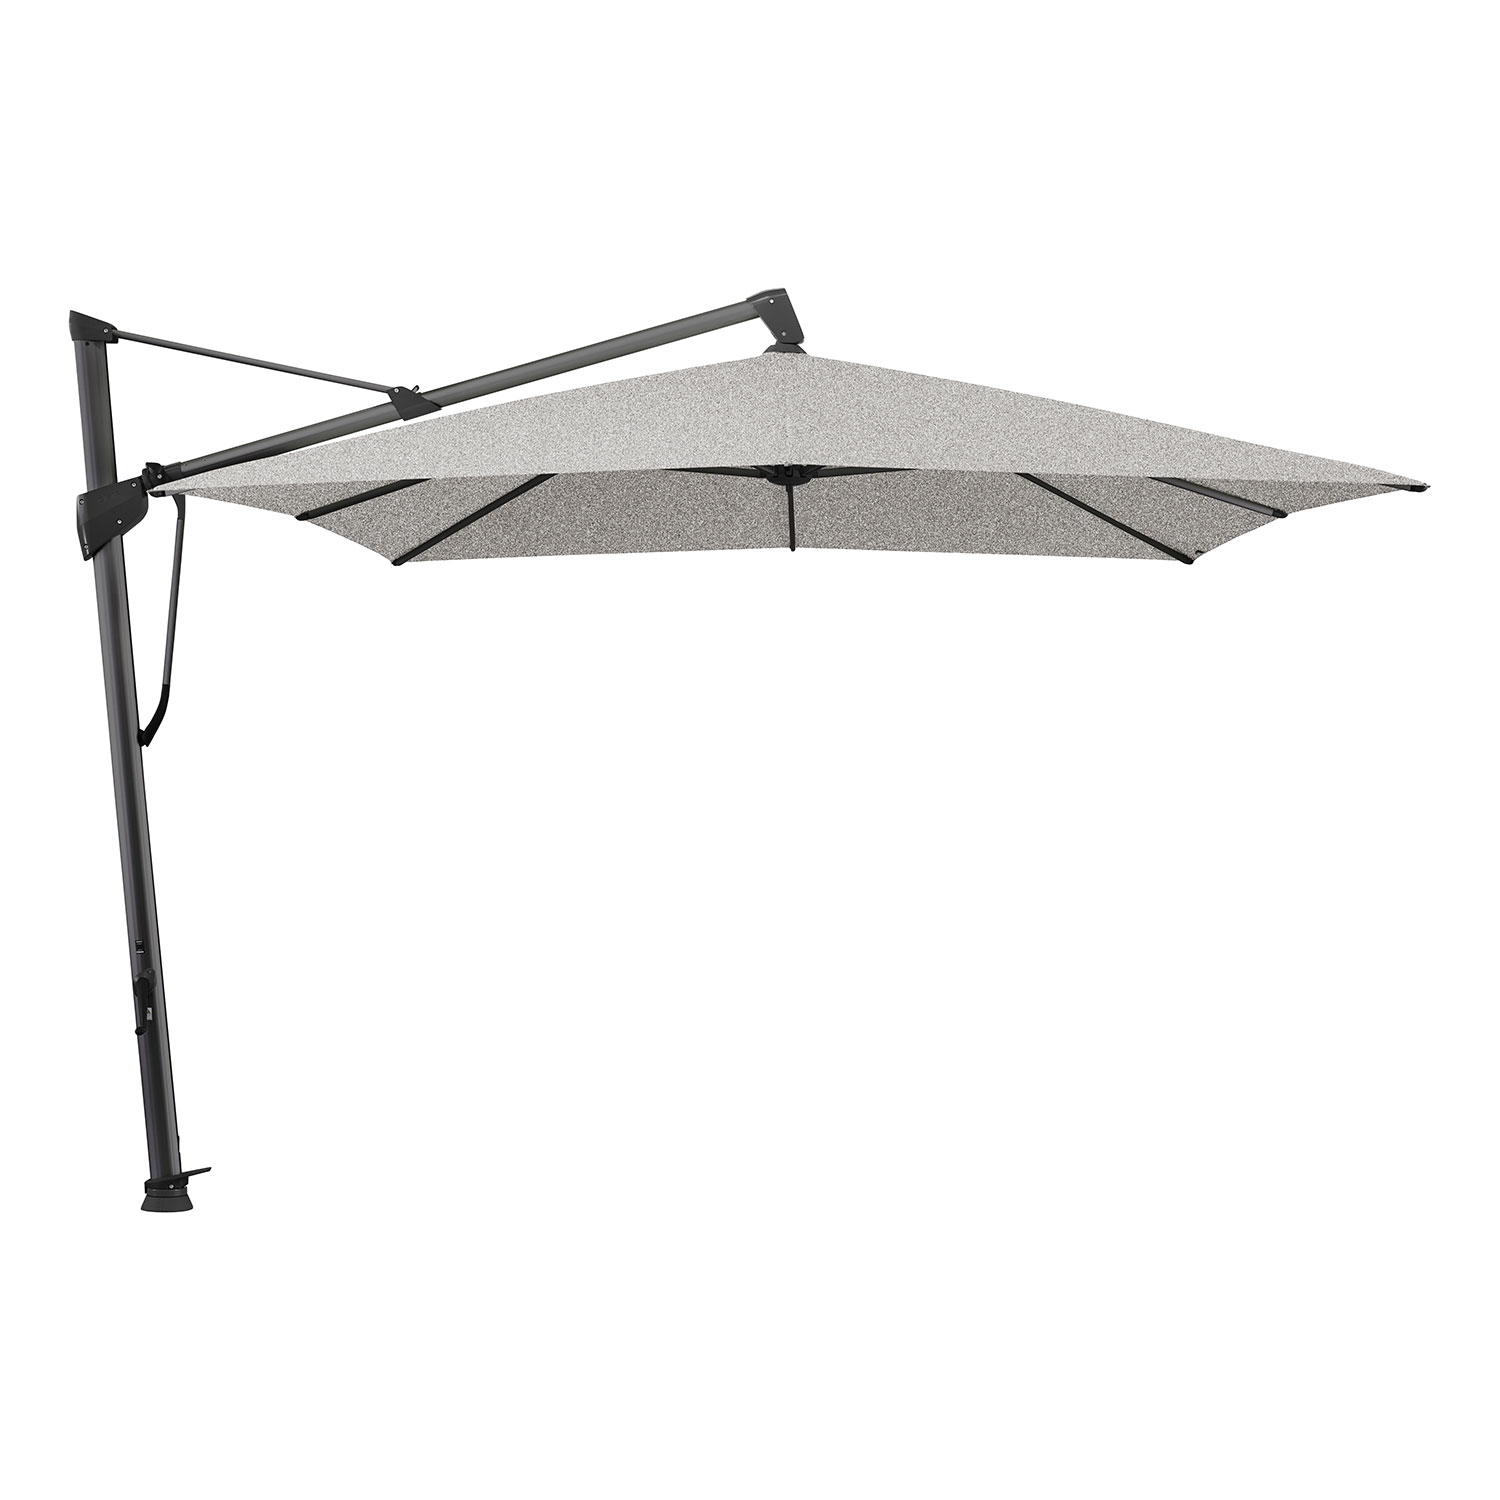 Glatz Sombrano S+ frihängande parasoll 400×300 cm kat.5 antracite alu / 652 silver